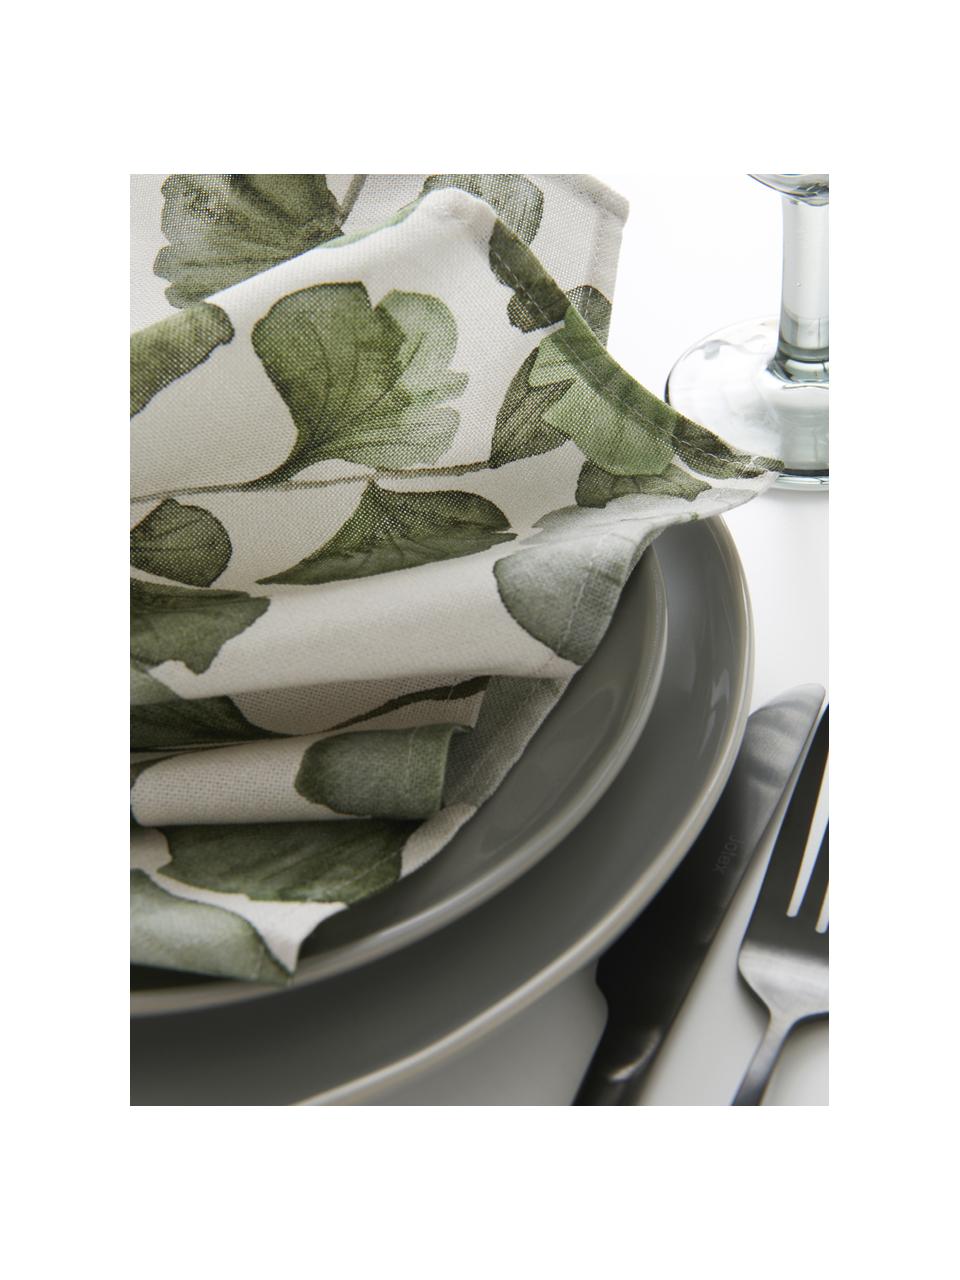 Baumwoll-Servietten Gigi mit Blättermotiven, 4 Stück, 100 % Baumwolle, Beige, Grün, B 45 x L 45 cm